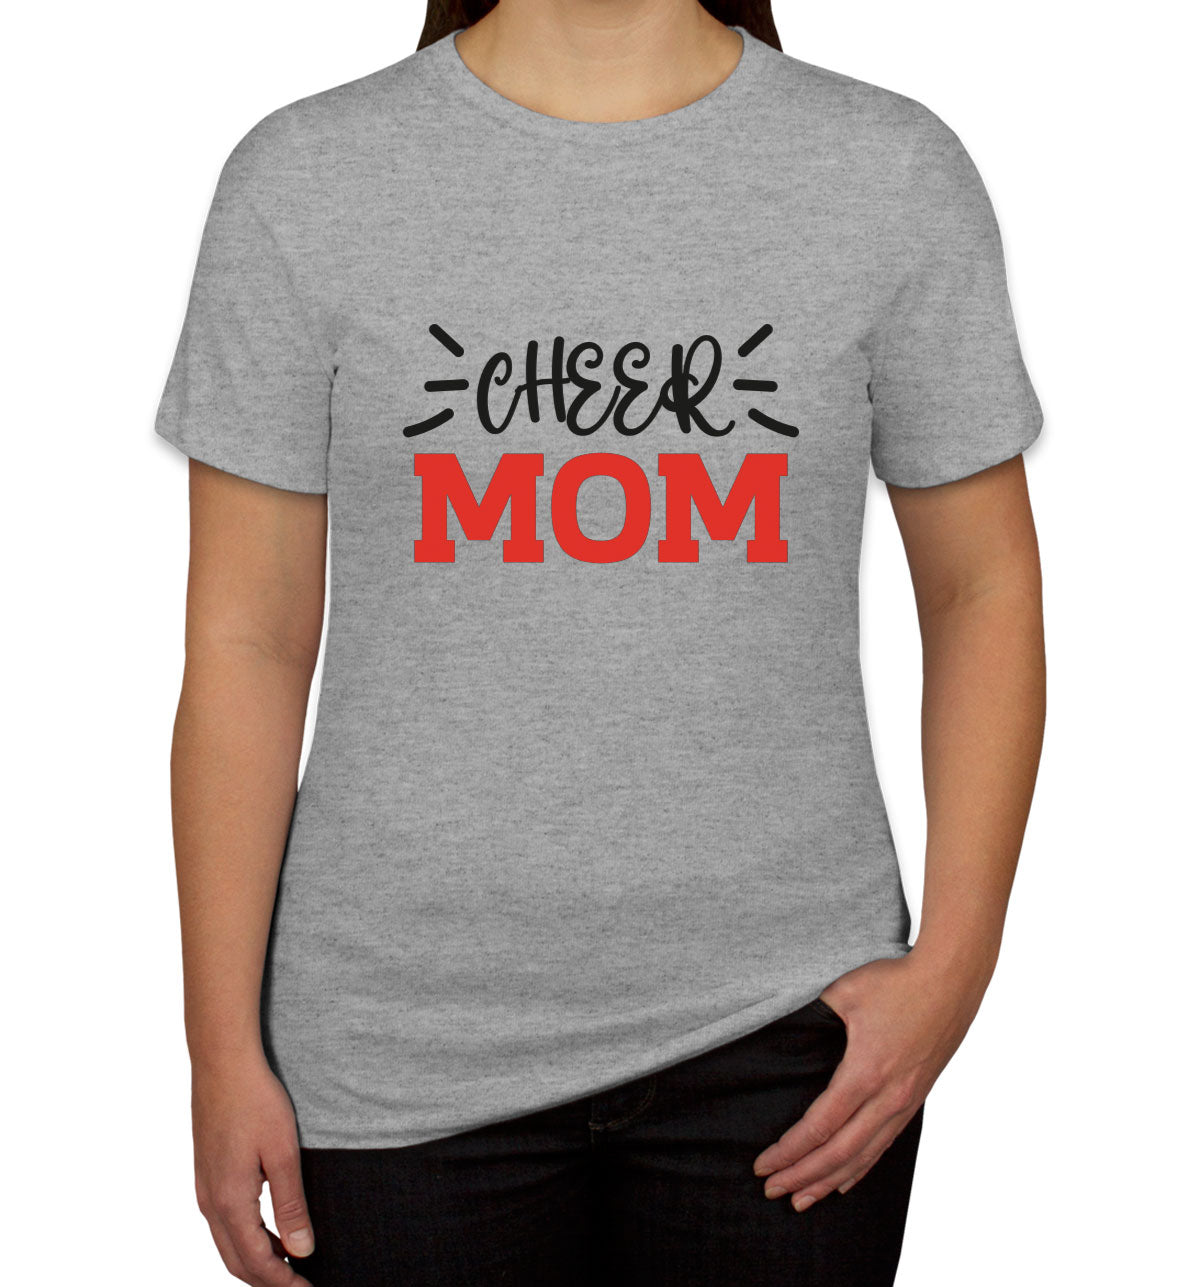 Cheer Mom Women's T-shirt